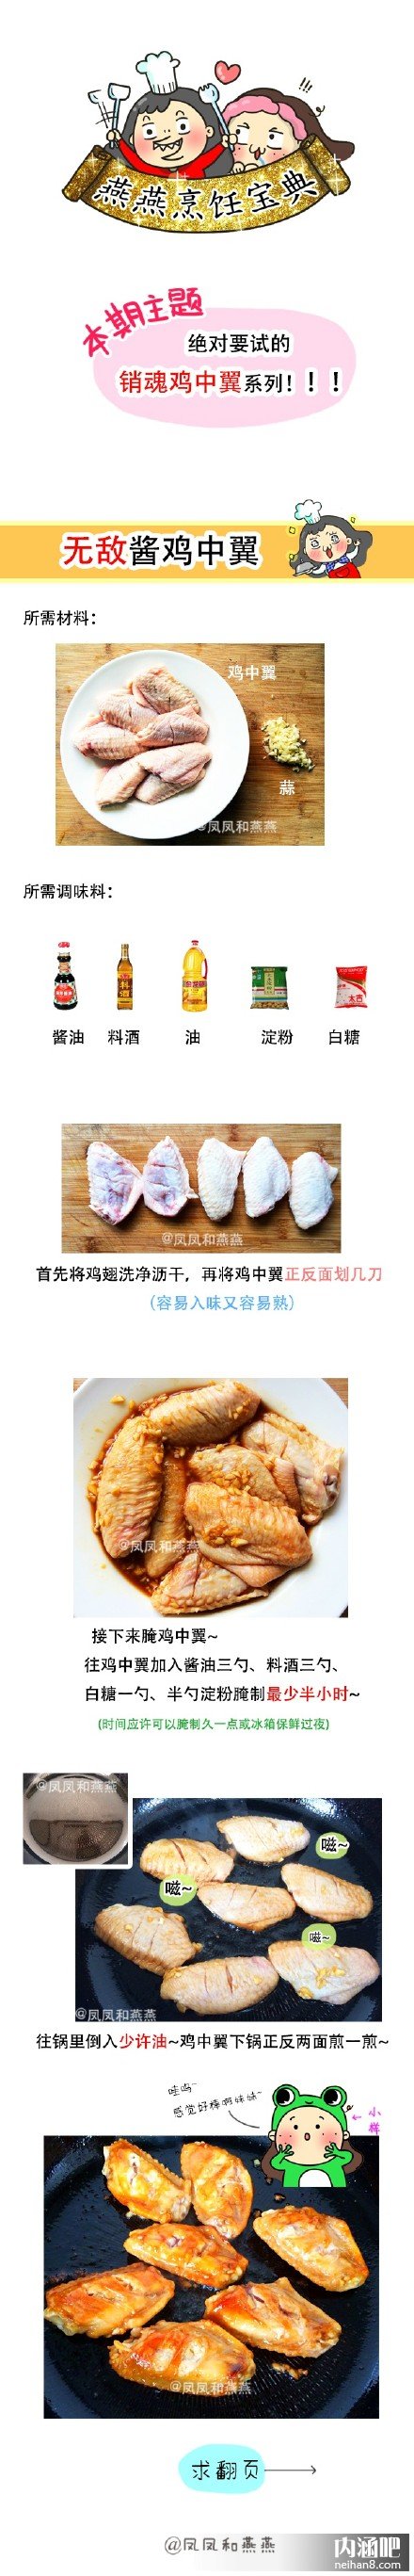 教你如何做鸡中翅  中菜 + 西式美食